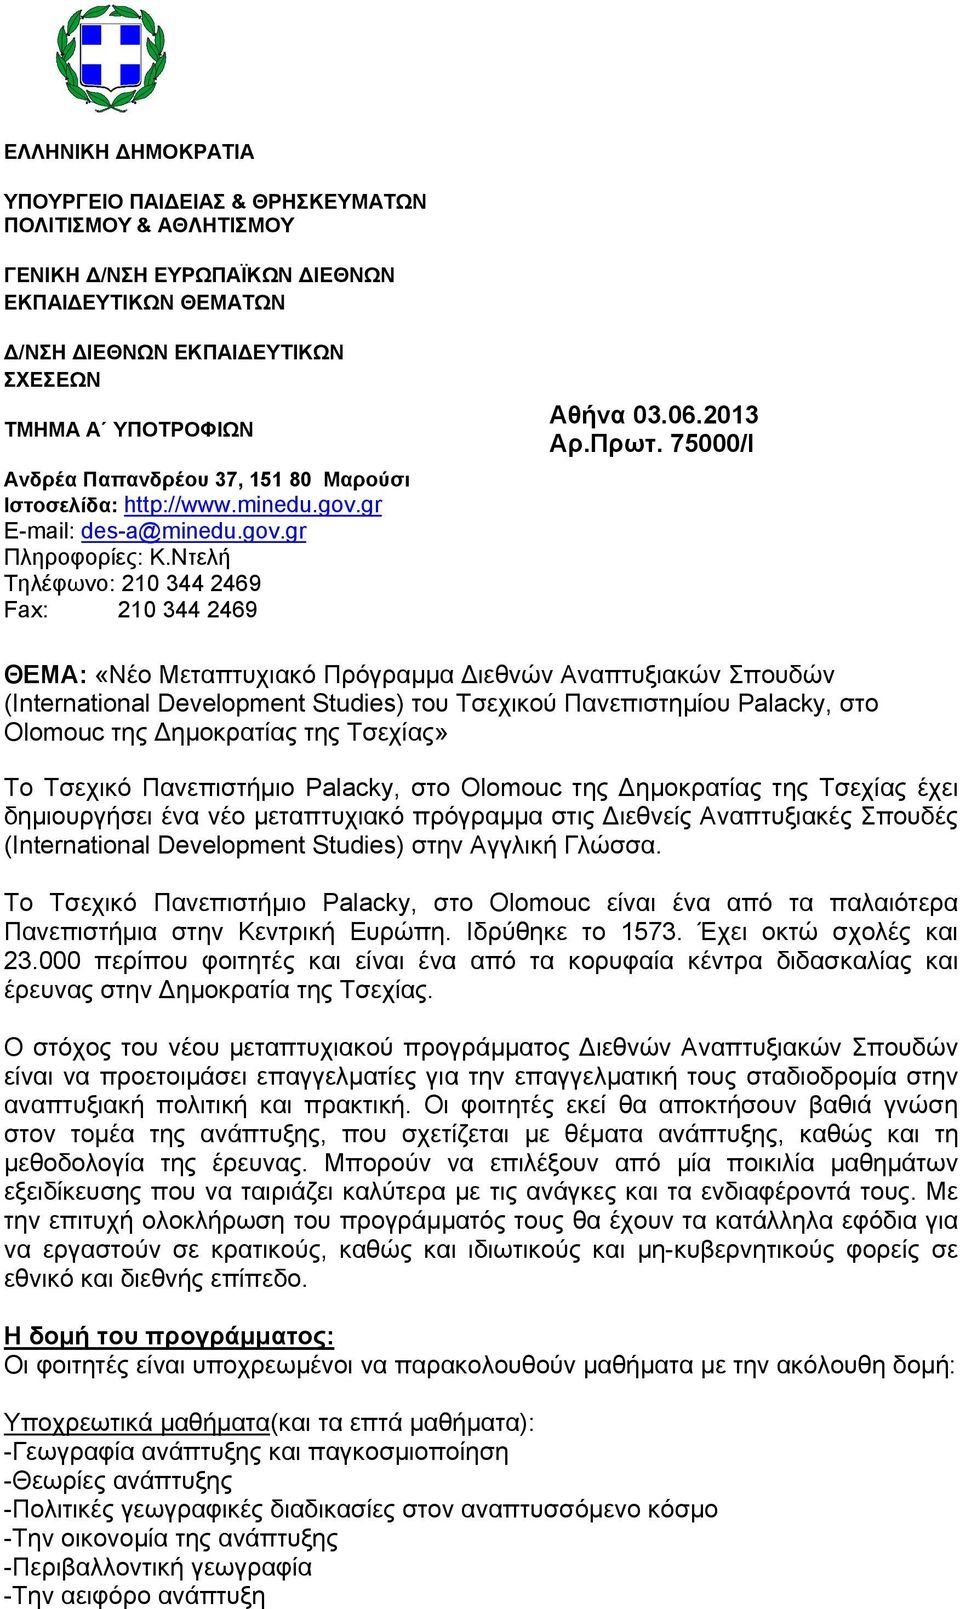 75000/Ι ΘΕΜΑ: «Νέο Μεταπτυχιακό Πρόγραµµα ιεθνών Αναπτυξιακών Σπουδών (International Development Studies) του Τσεχικού Πανεπιστηµίου Palacky, στο Olomouc της ηµοκρατίας της Τσεχίας» Το Τσεχικό